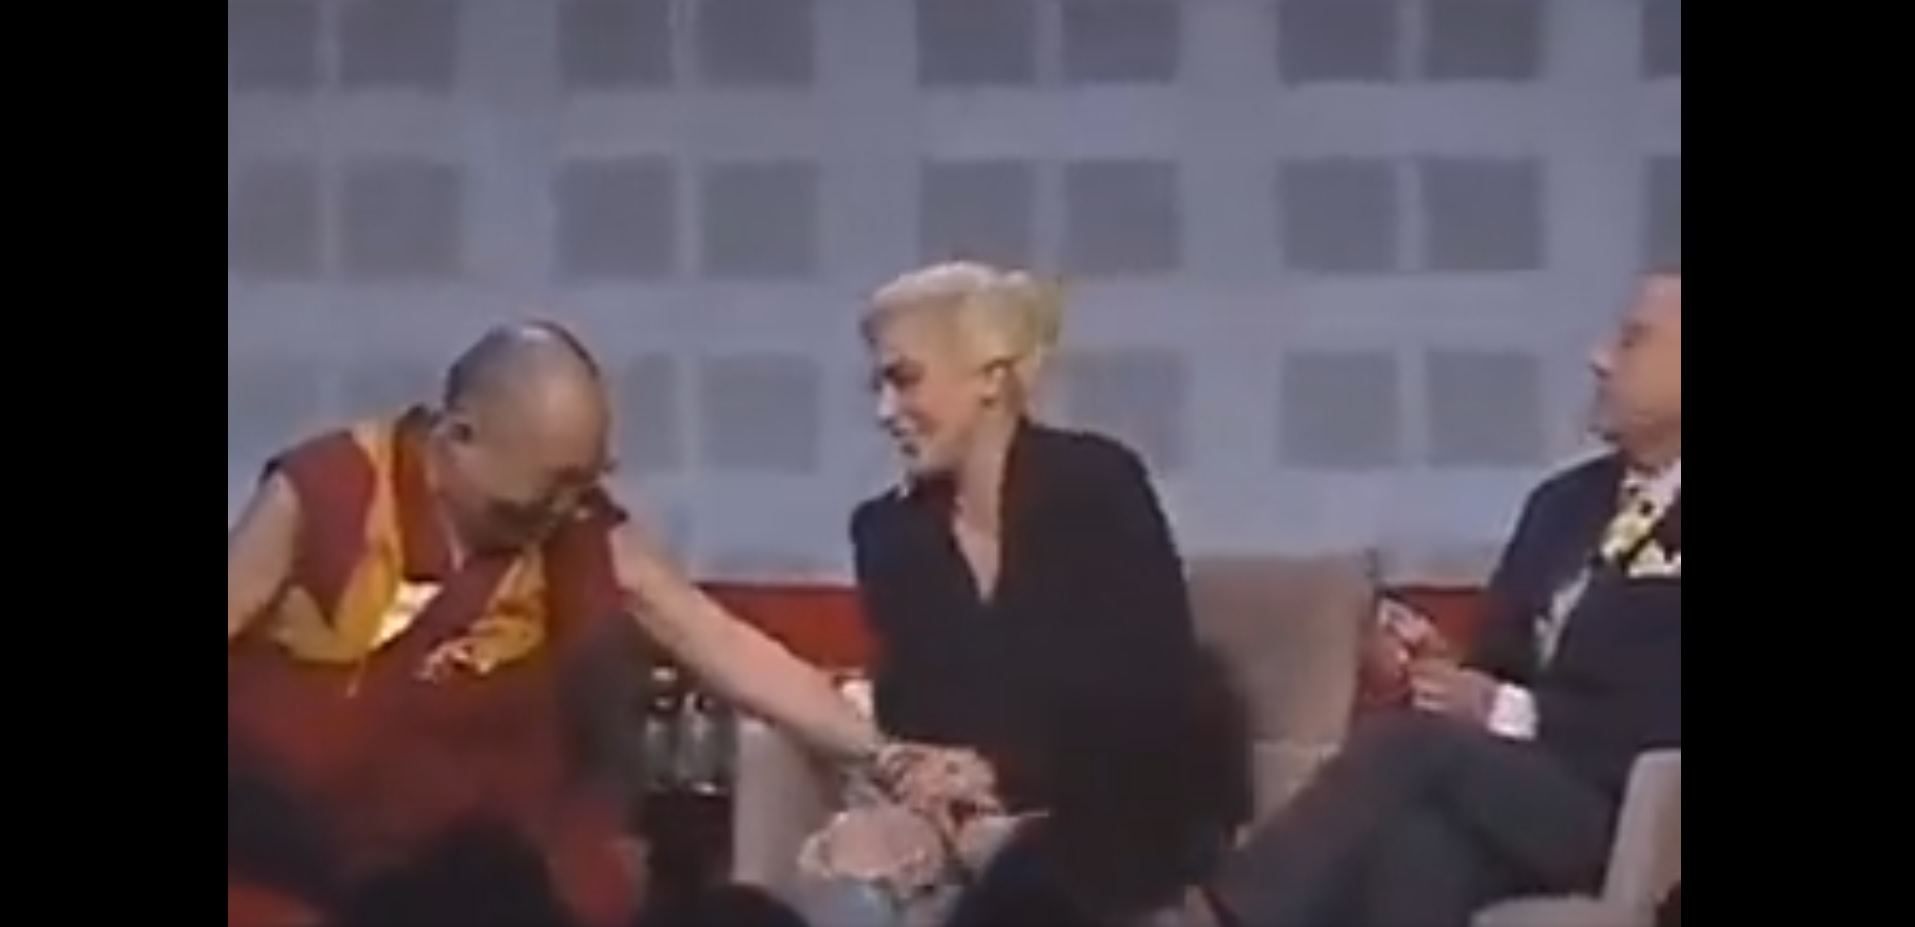 Momento en el que el Dalai Lama se acerca a Lady Gaga, durante el evento ocurrido en Estados Unidos en 2016. (Foto Prensa Libre: @OliLondonTV/Twitter)